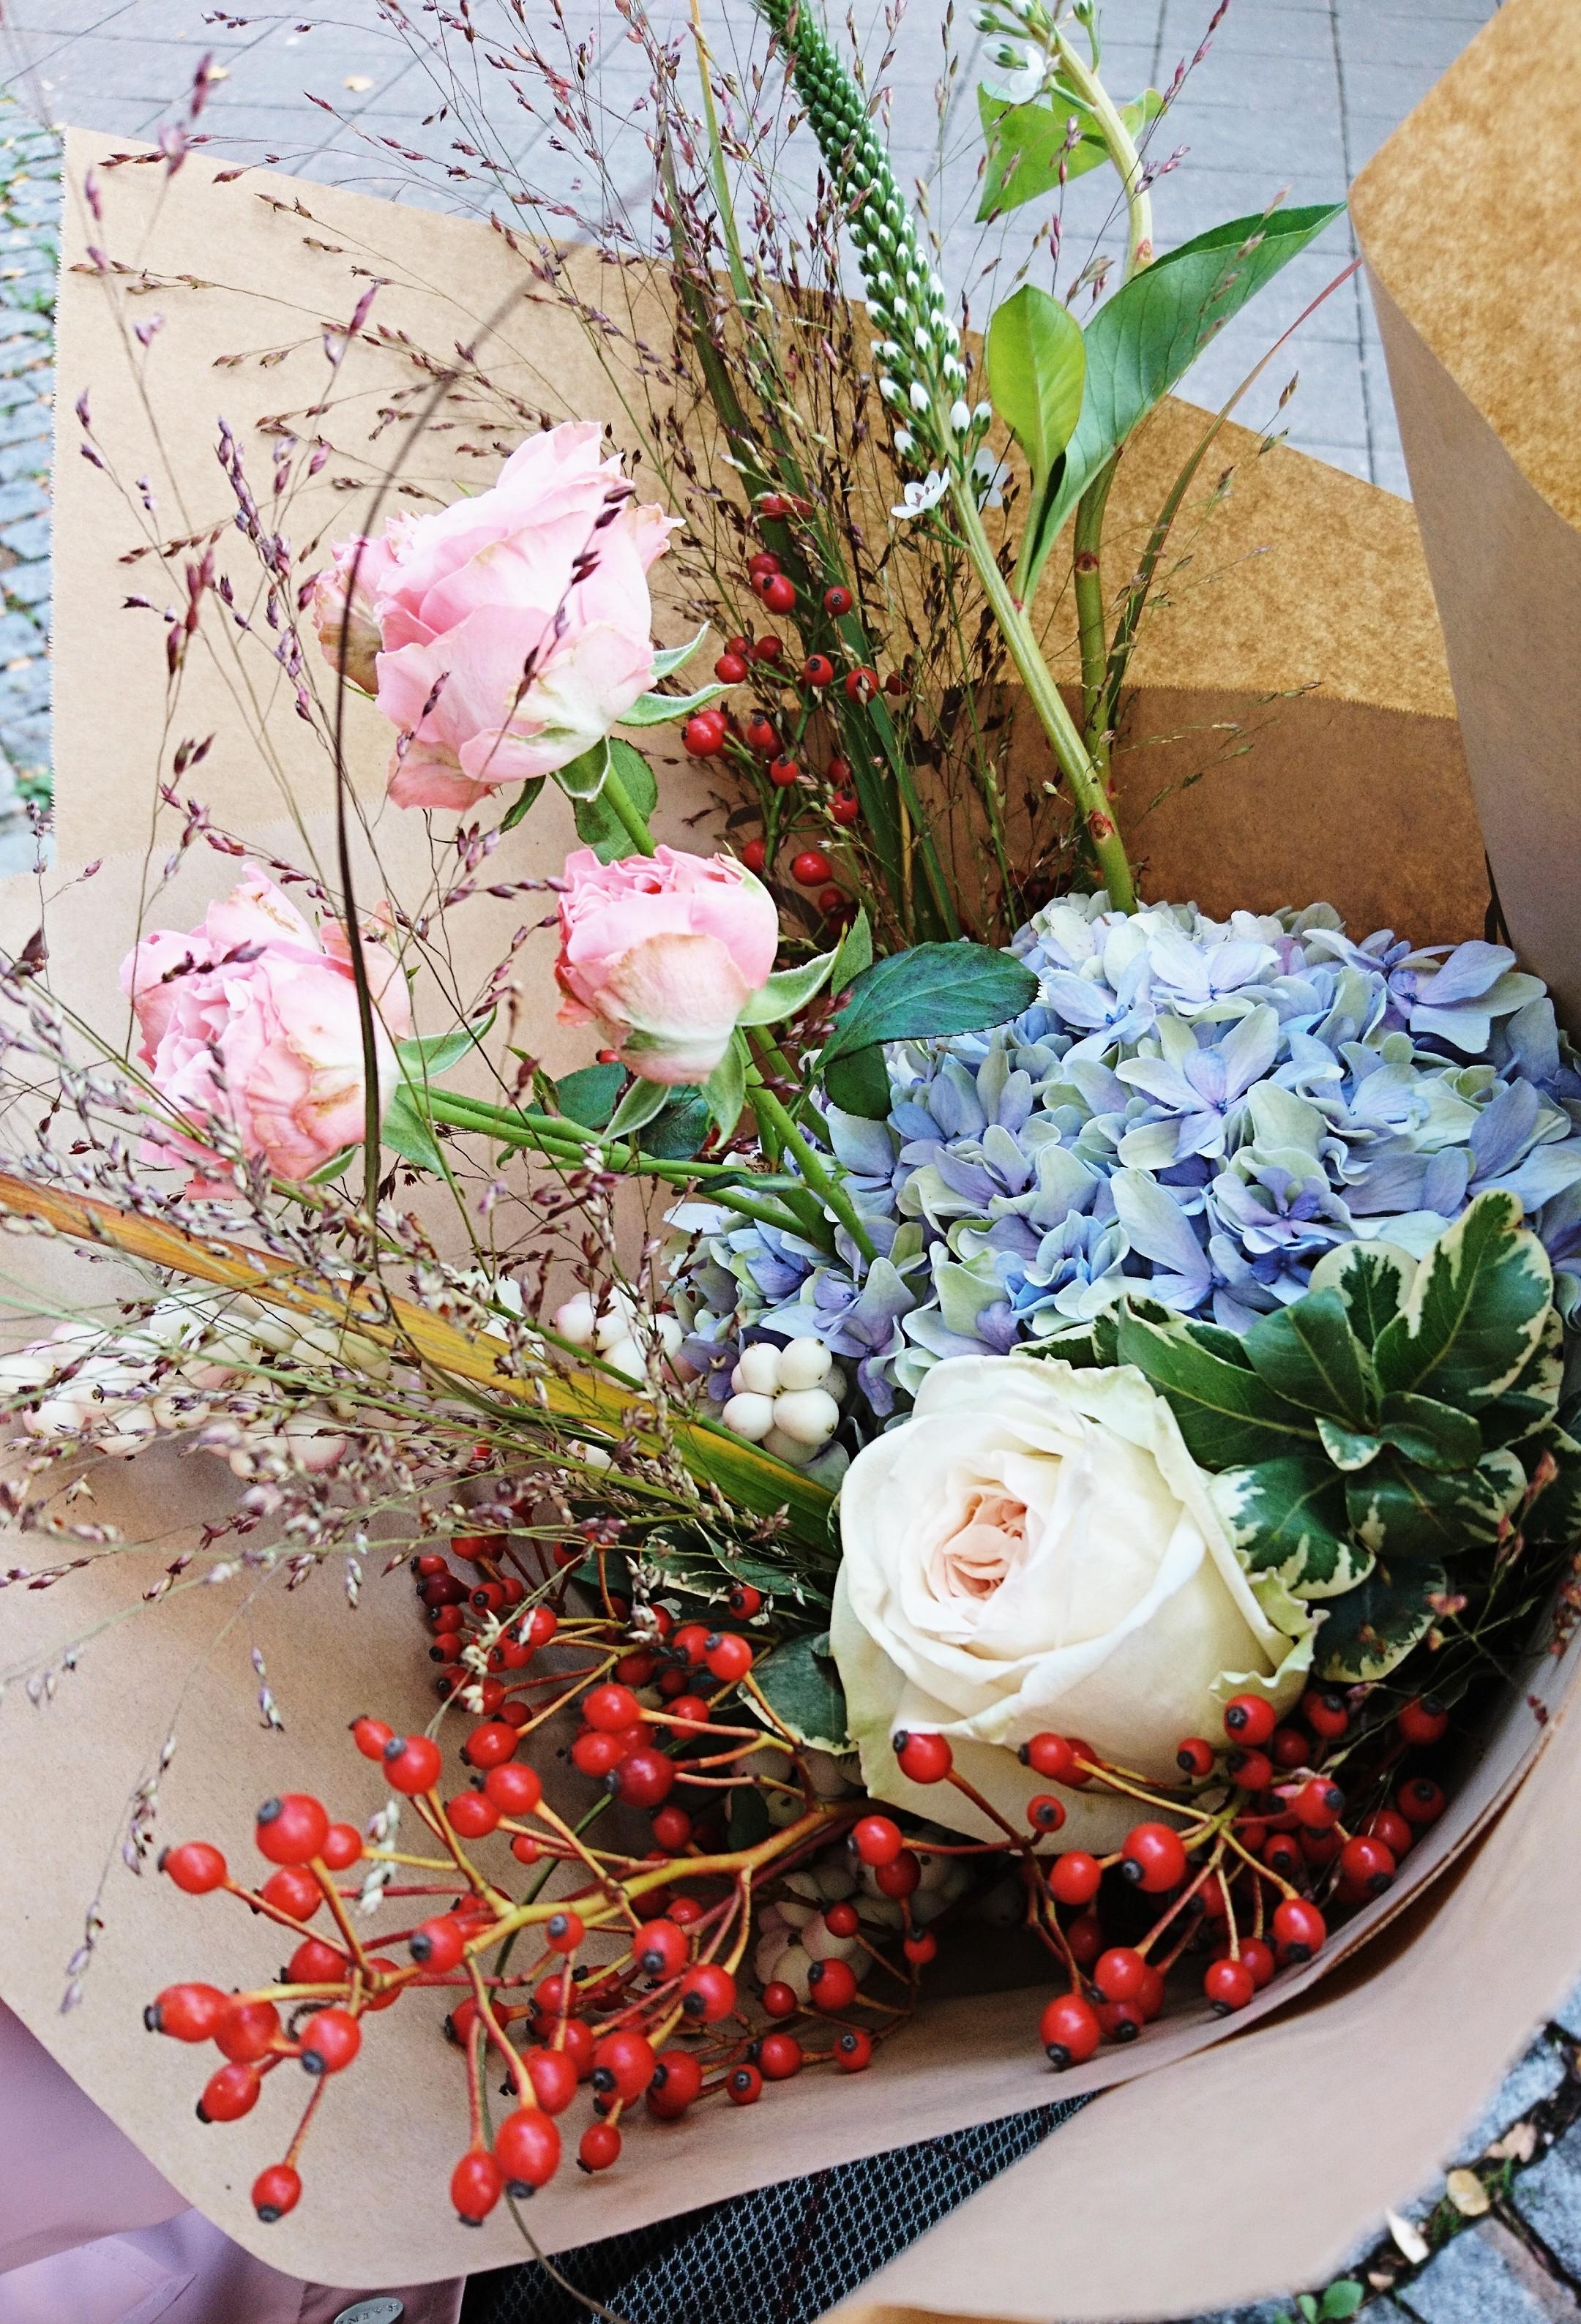 Ich wünsche euch allen ein ganz wunderschönes Wochenende! #freshflowerfriday #flowers #Blumenliebe #Blumen #Blumenstrauß